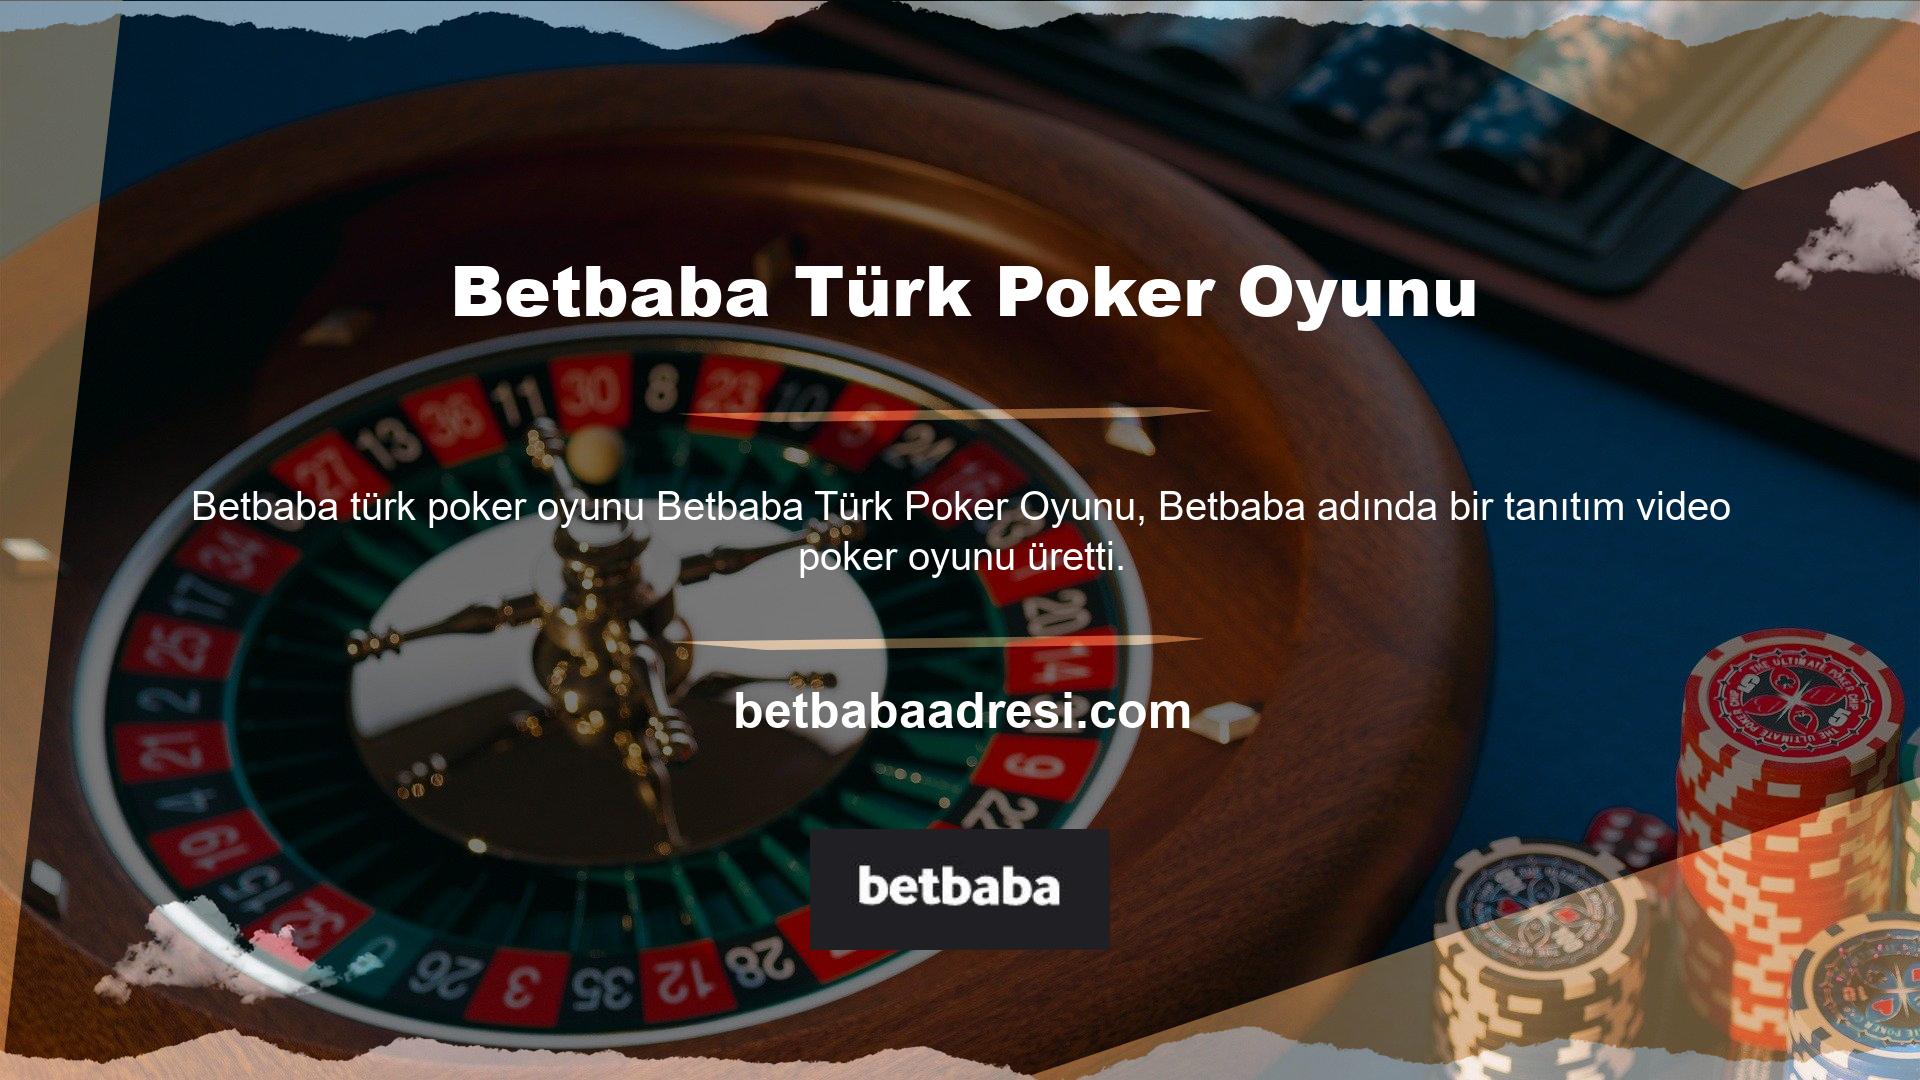 Betbaba Türk Poker Oyunları Listesi'nde yer almakta olup, poker zevklerini üyelere yönelik masa oyunları ve canlı casino oyunlarında kullanmak istemeyen farklı profillerdeki oyuncuları temsil etmektedir